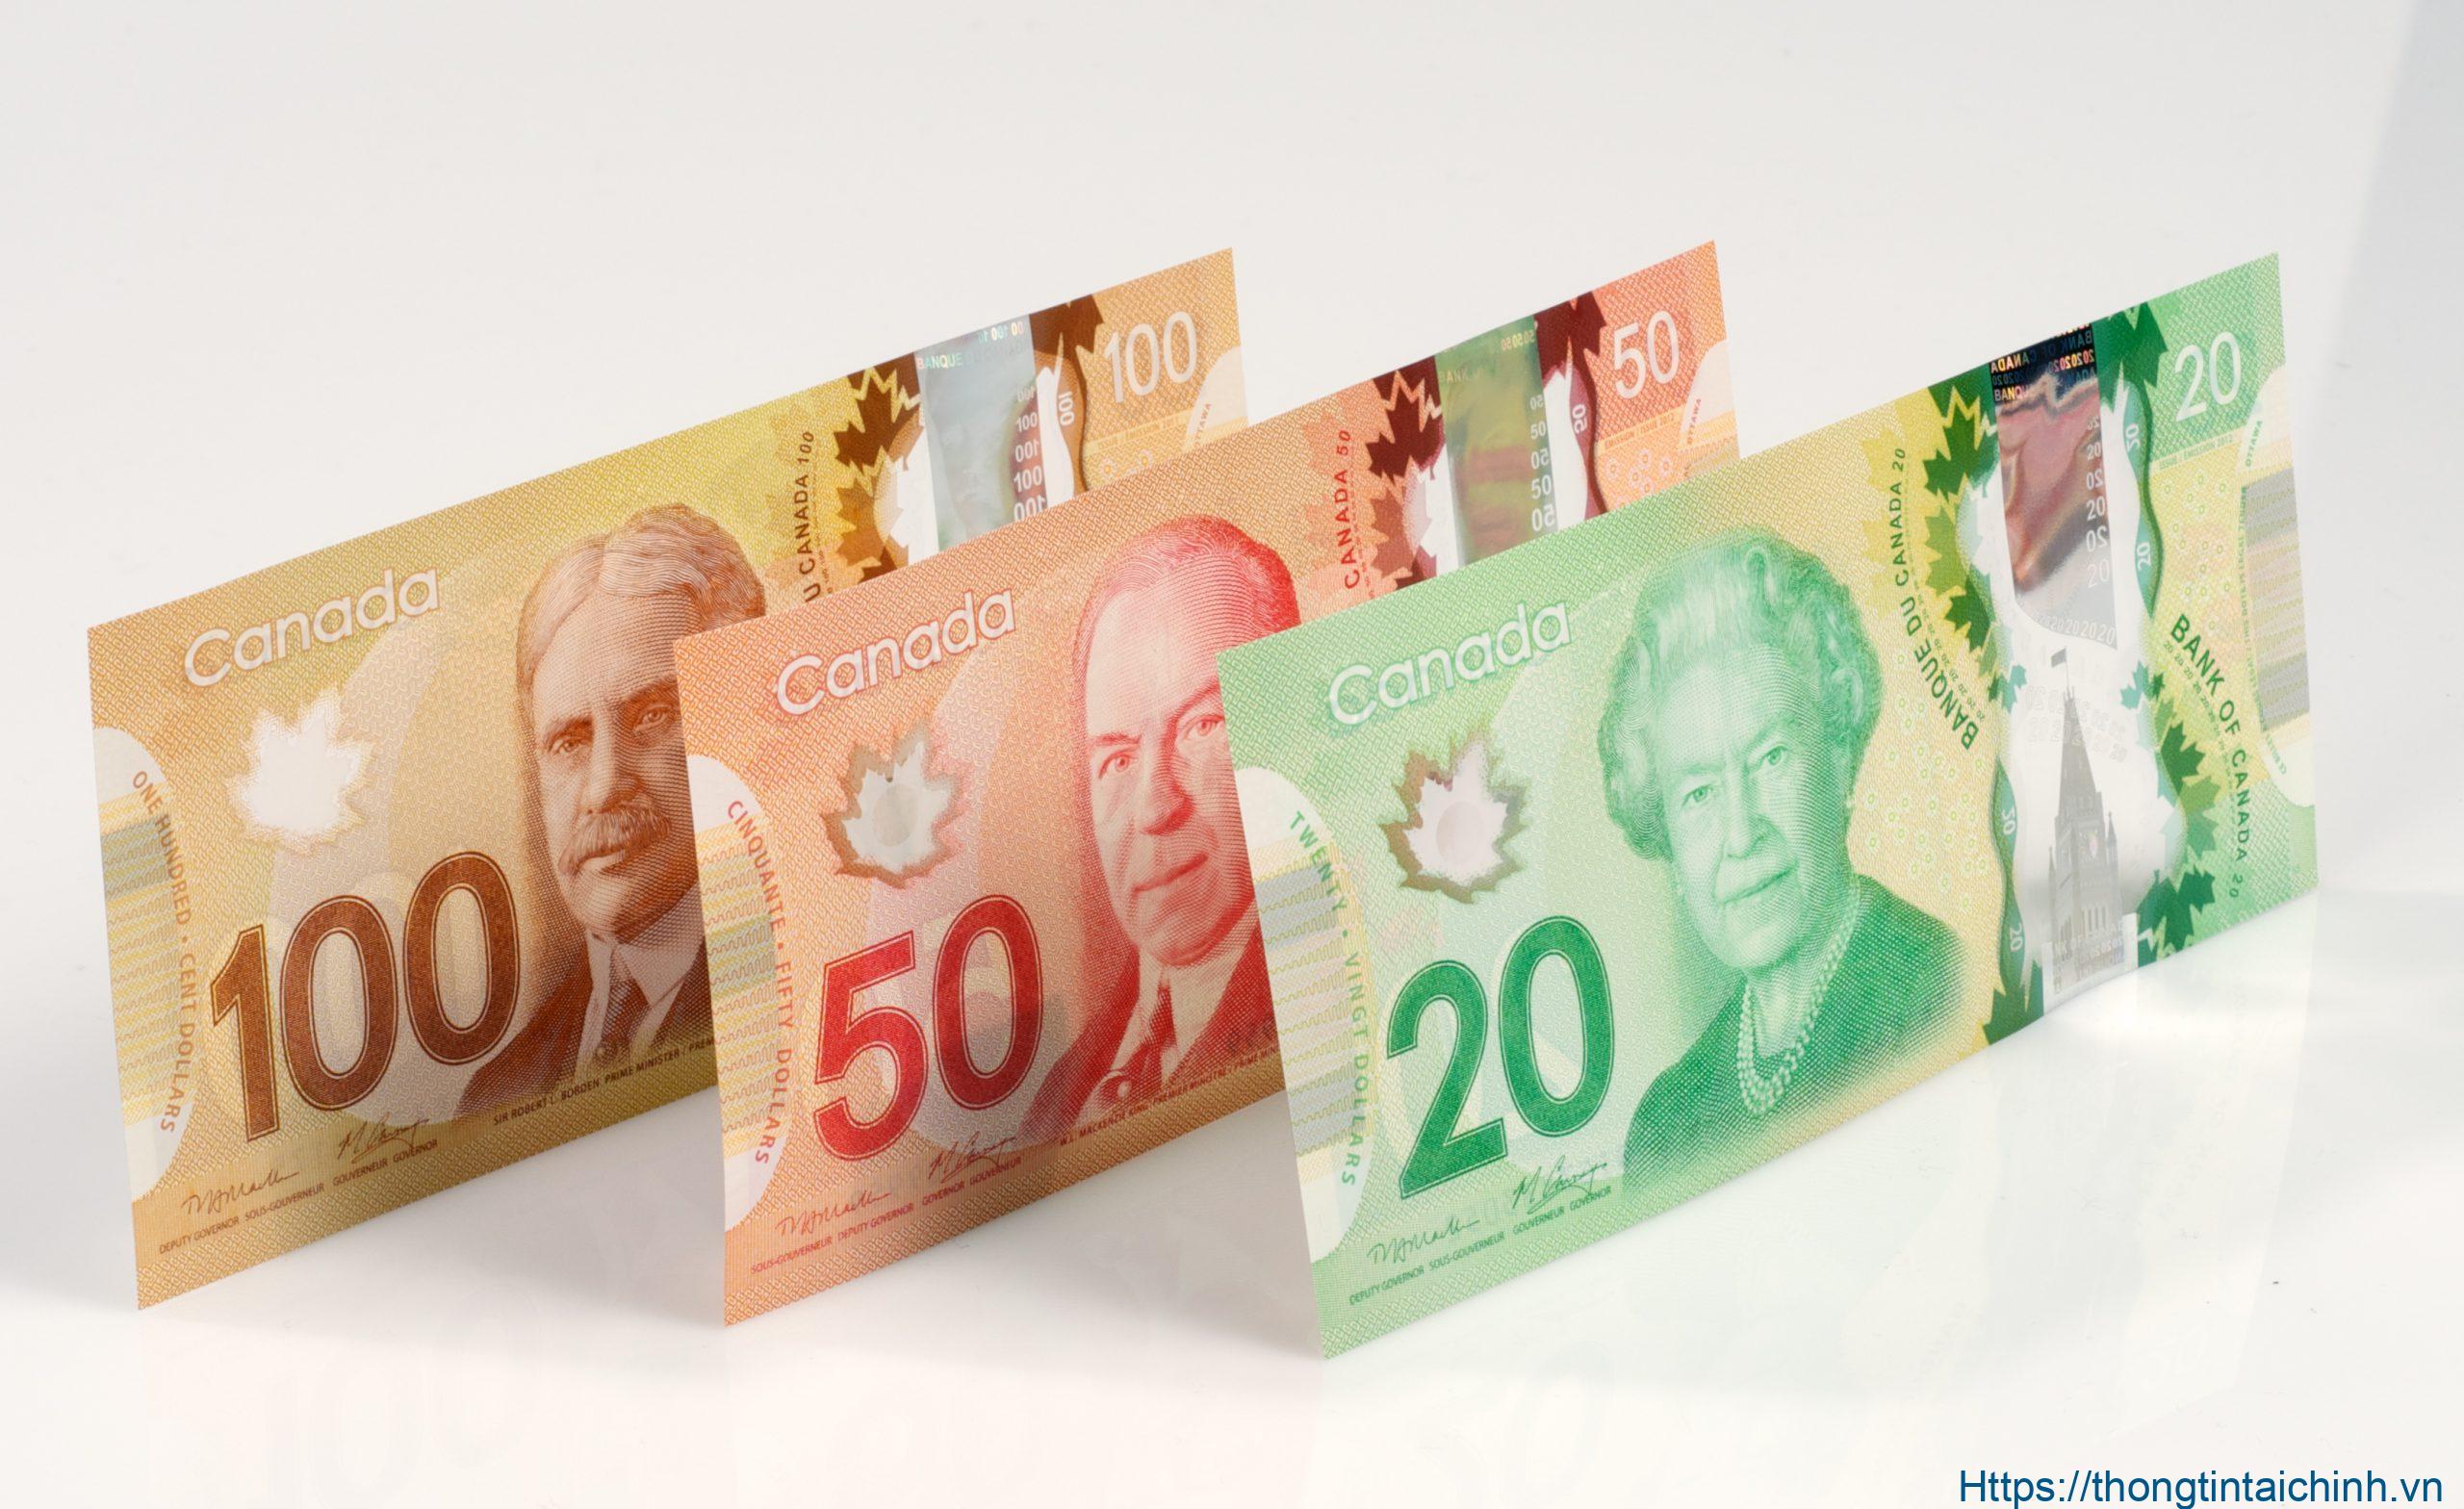 Đô la Canada là đơn vị tiền tệ chính thức của Canada, mã hiệu quốc tế là CAD